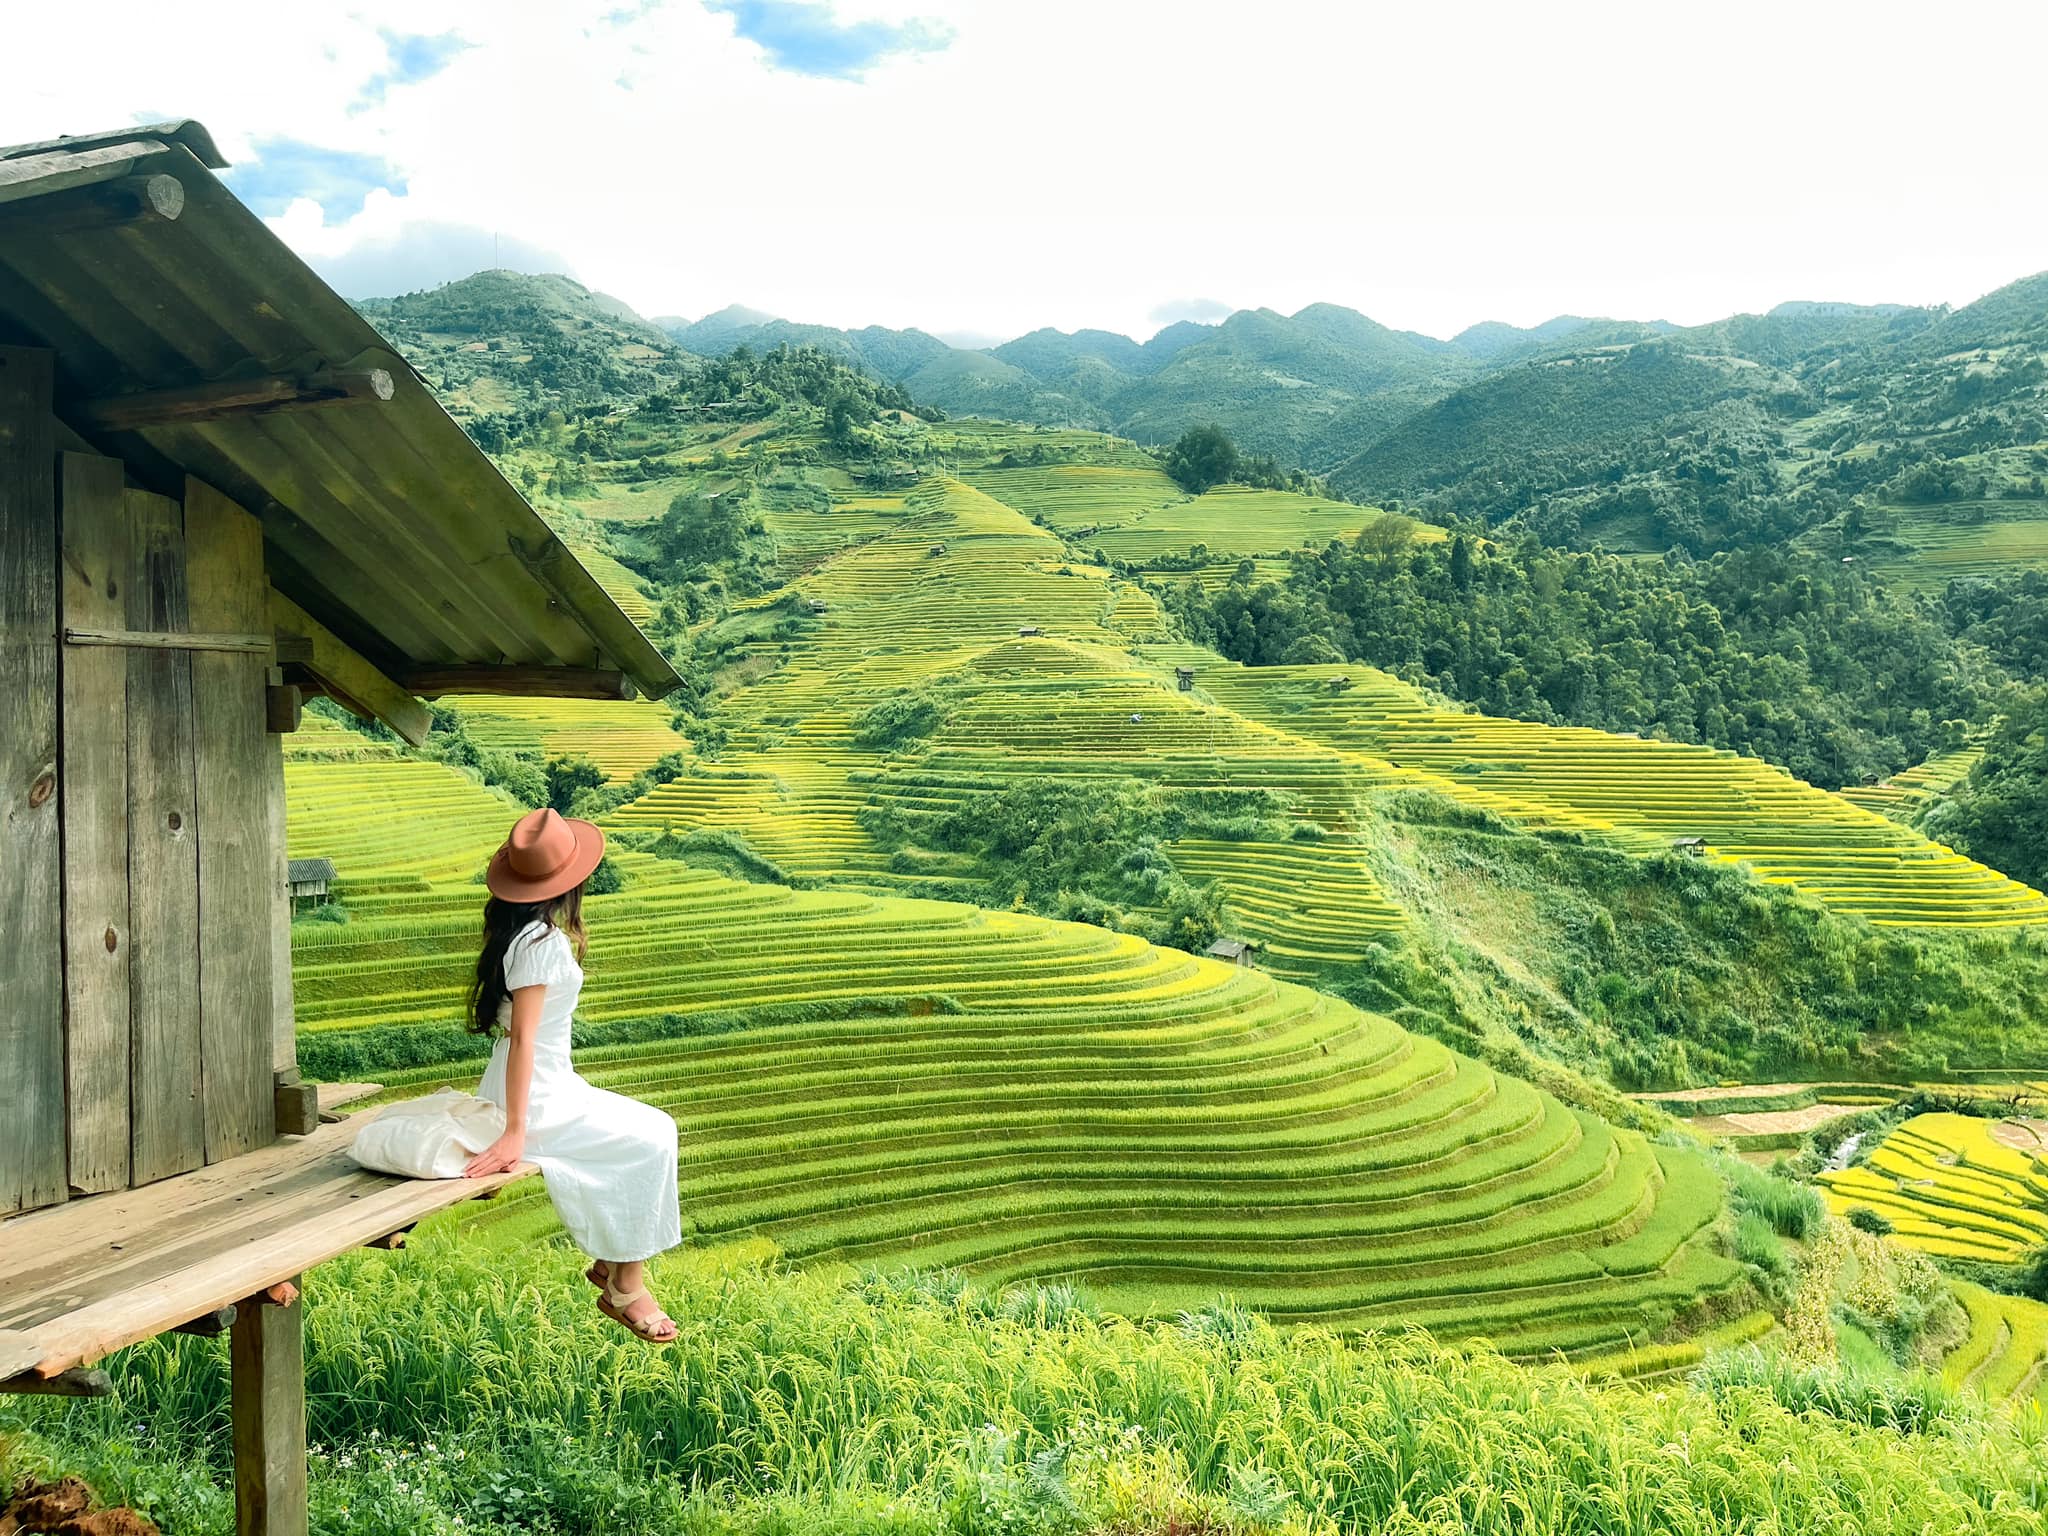 Trào lưu khoe ảnh ăn mì tại những địa điểm đẹp nhất Việt Nam - 10